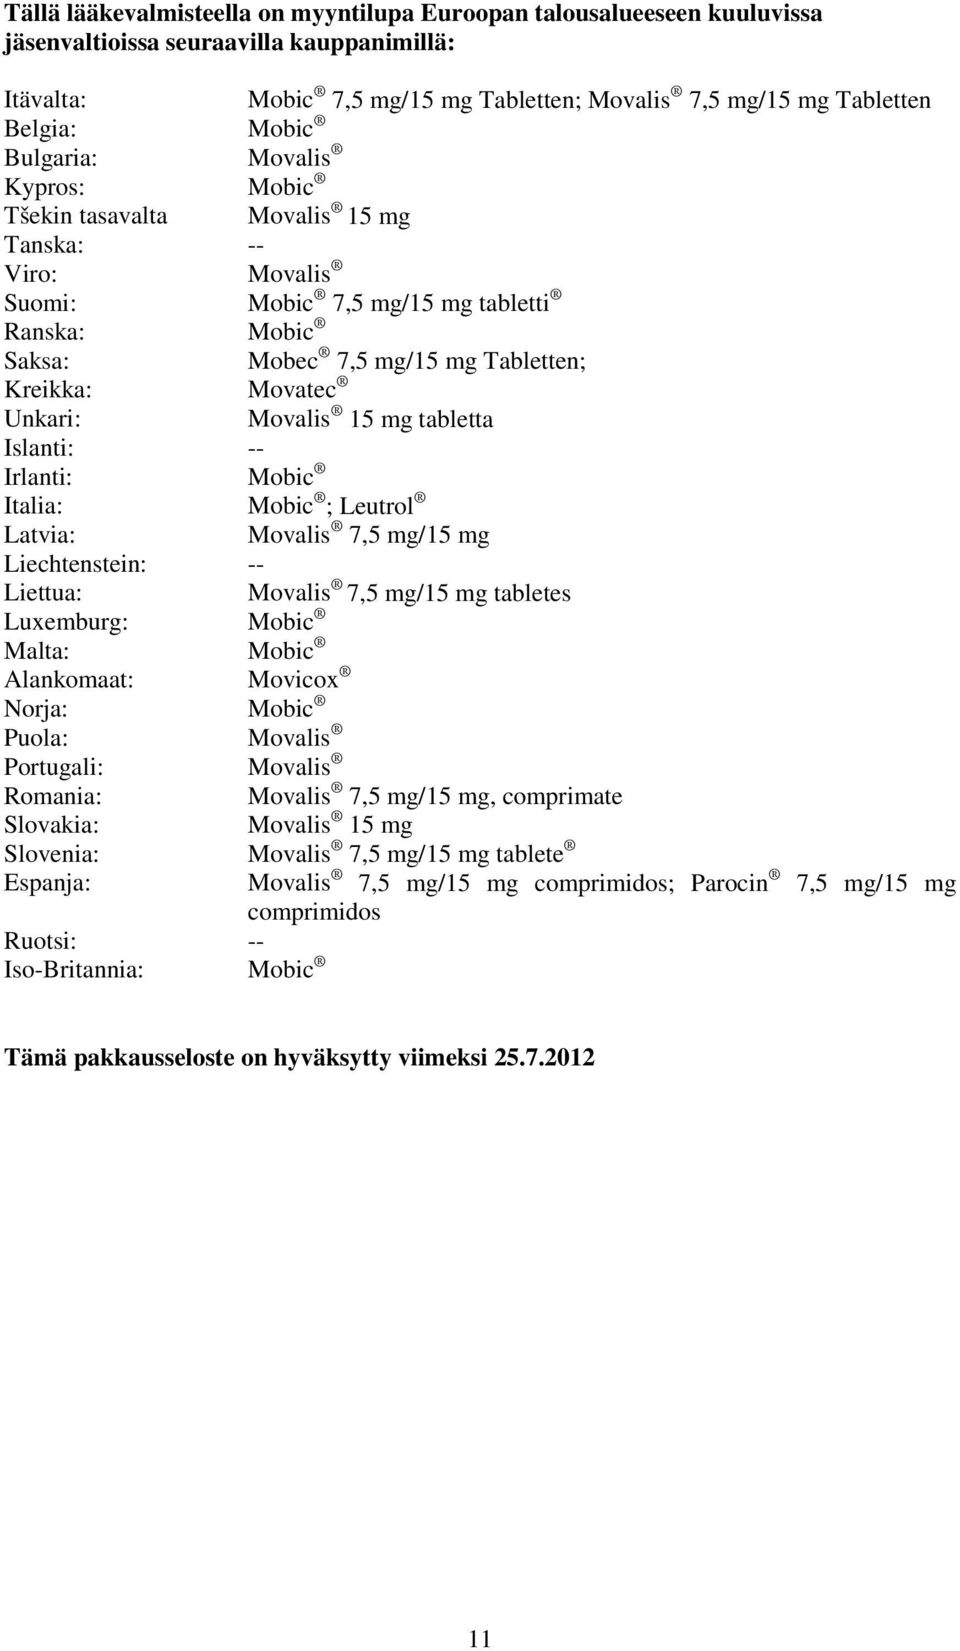 Unkari: Movalis 15 mg tabletta Islanti: -- Irlanti: Mobic Italia: Mobic ; Leutrol Latvia: Movalis 7,5 mg/15 mg Liechtenstein: -- Liettua: Movalis 7,5 mg/15 mg tabletes Luxemburg: Mobic Malta: Mobic